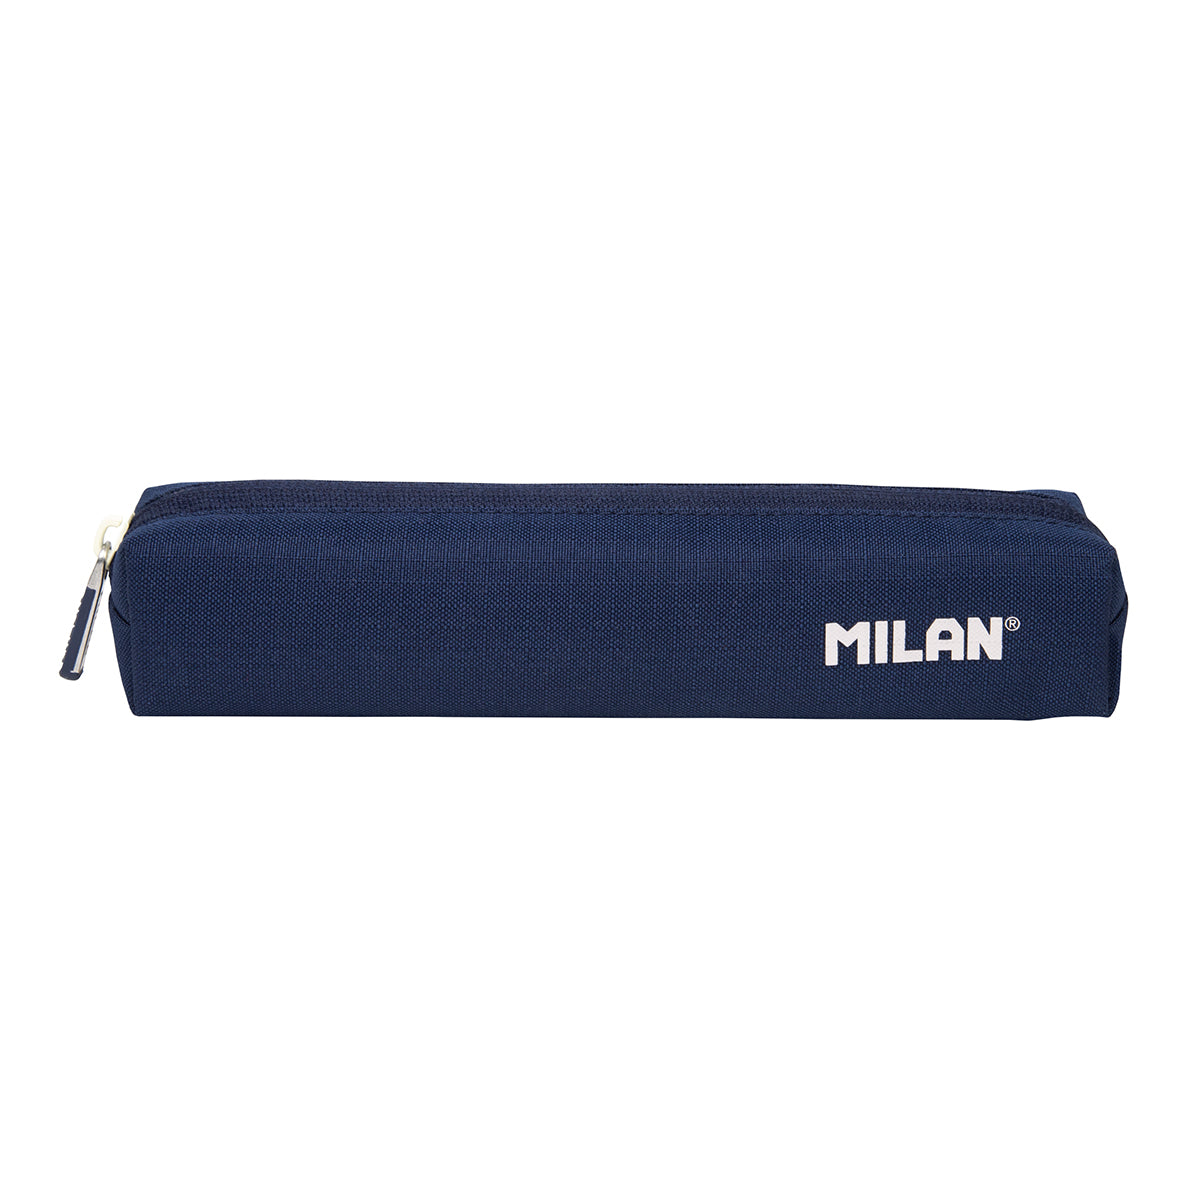 MILAN 1918 - Estuche Portatodo Multiusos en Formato Mini. Azul